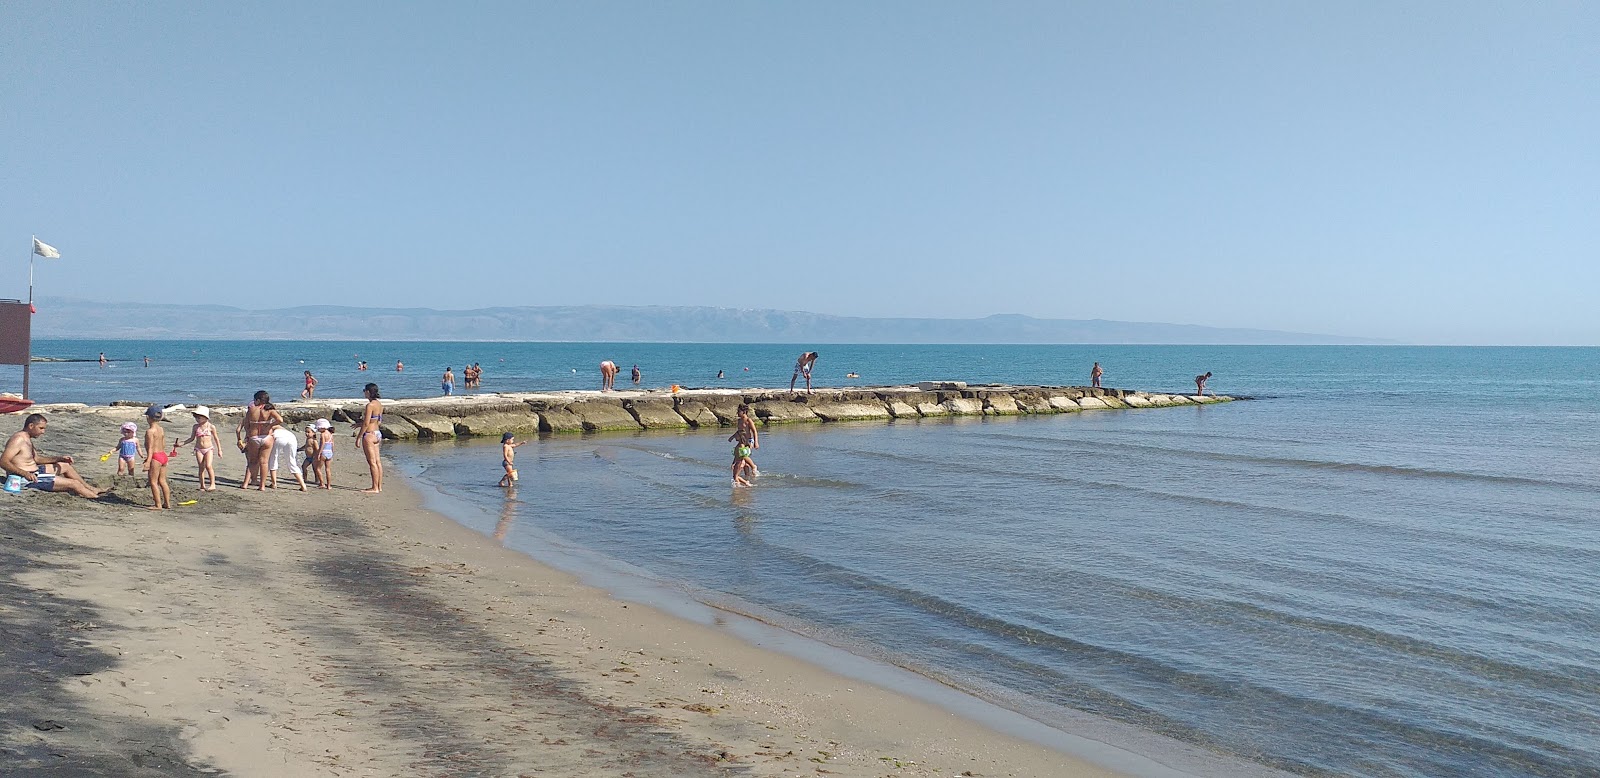 Zapponeta Beach II'in fotoğrafı kahverengi kum yüzey ile